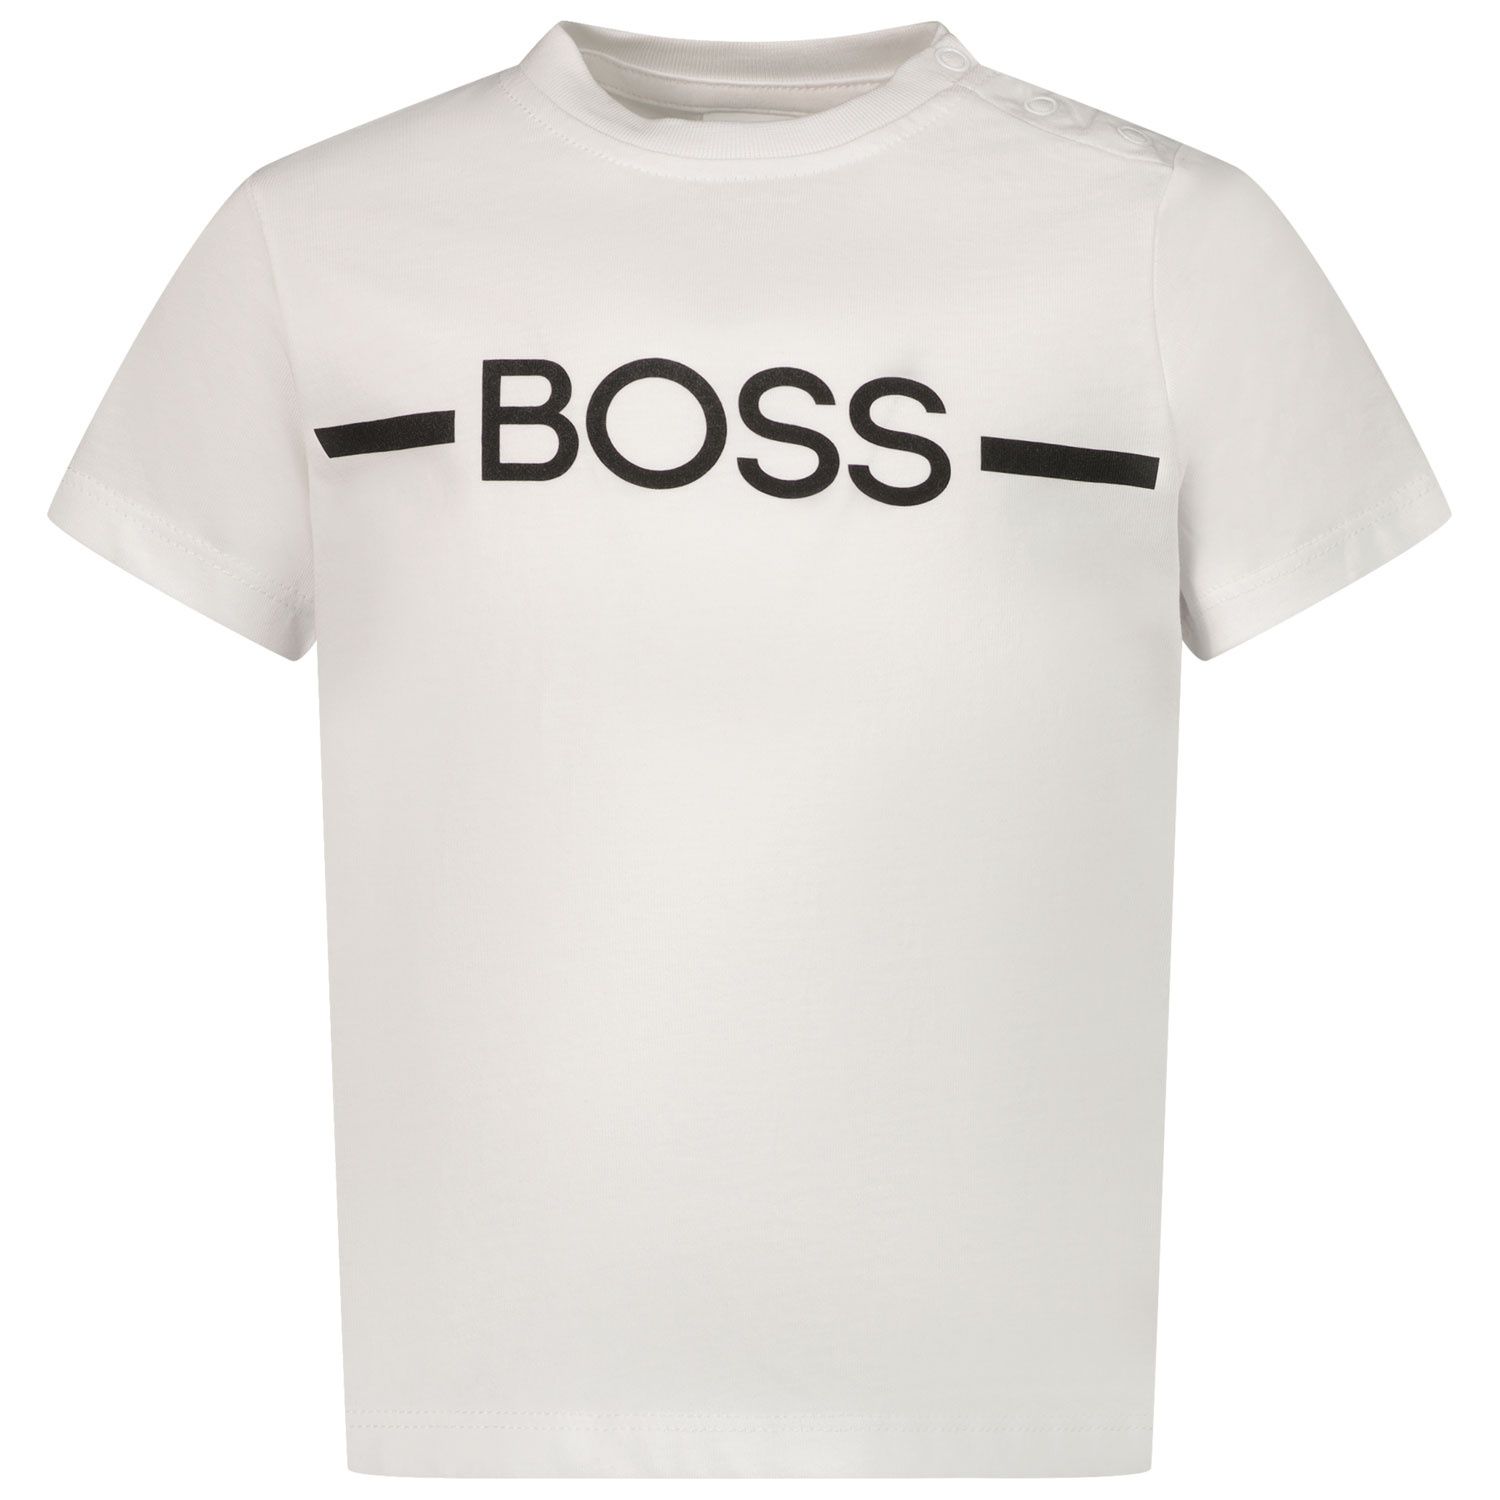 Bild von Boss J05908 Baby-T-Shirt Weiß